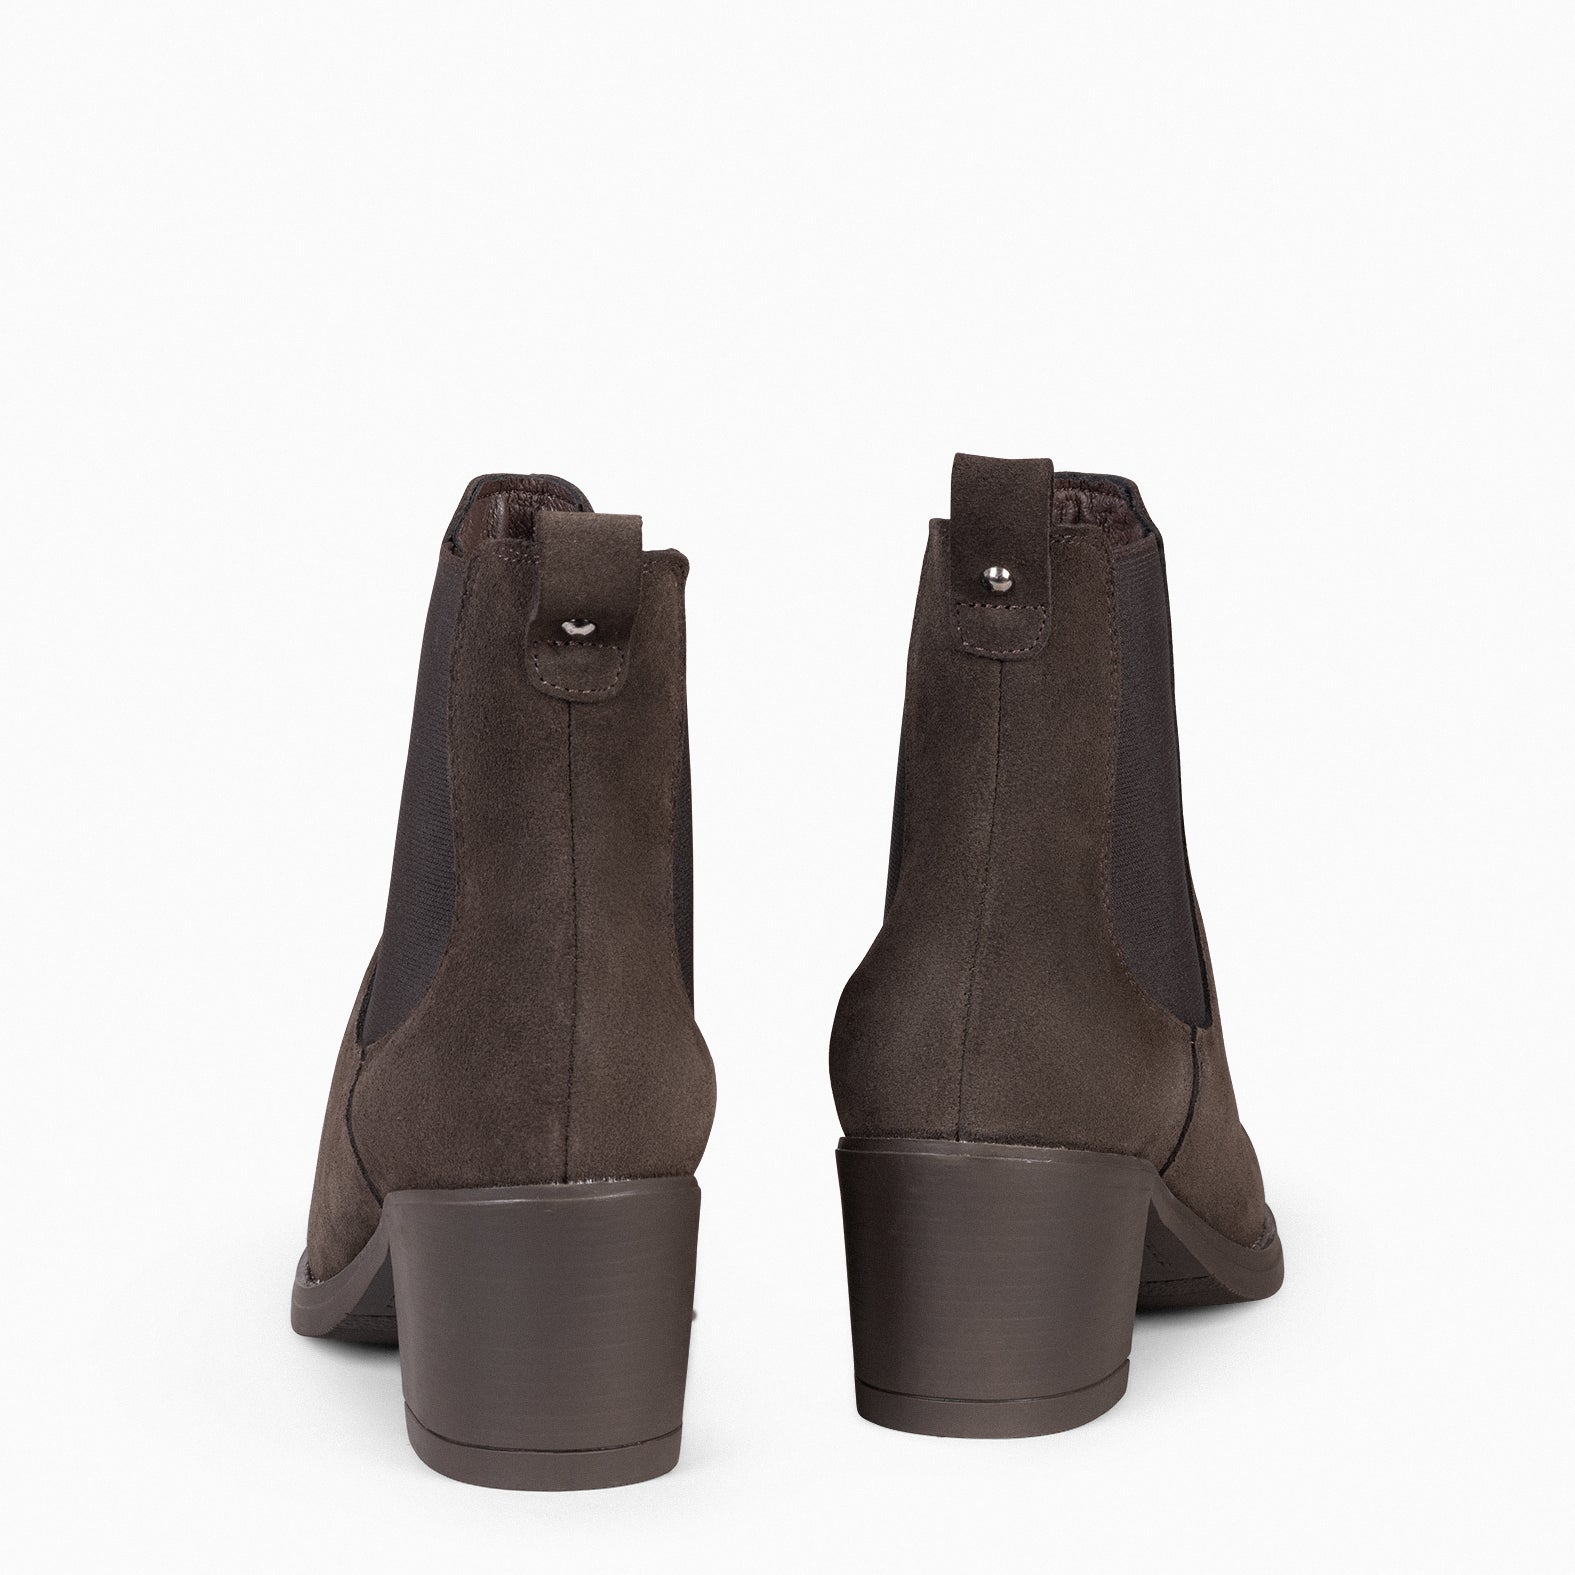 NEW CHELSEA - BROWN Women High heeled booties 